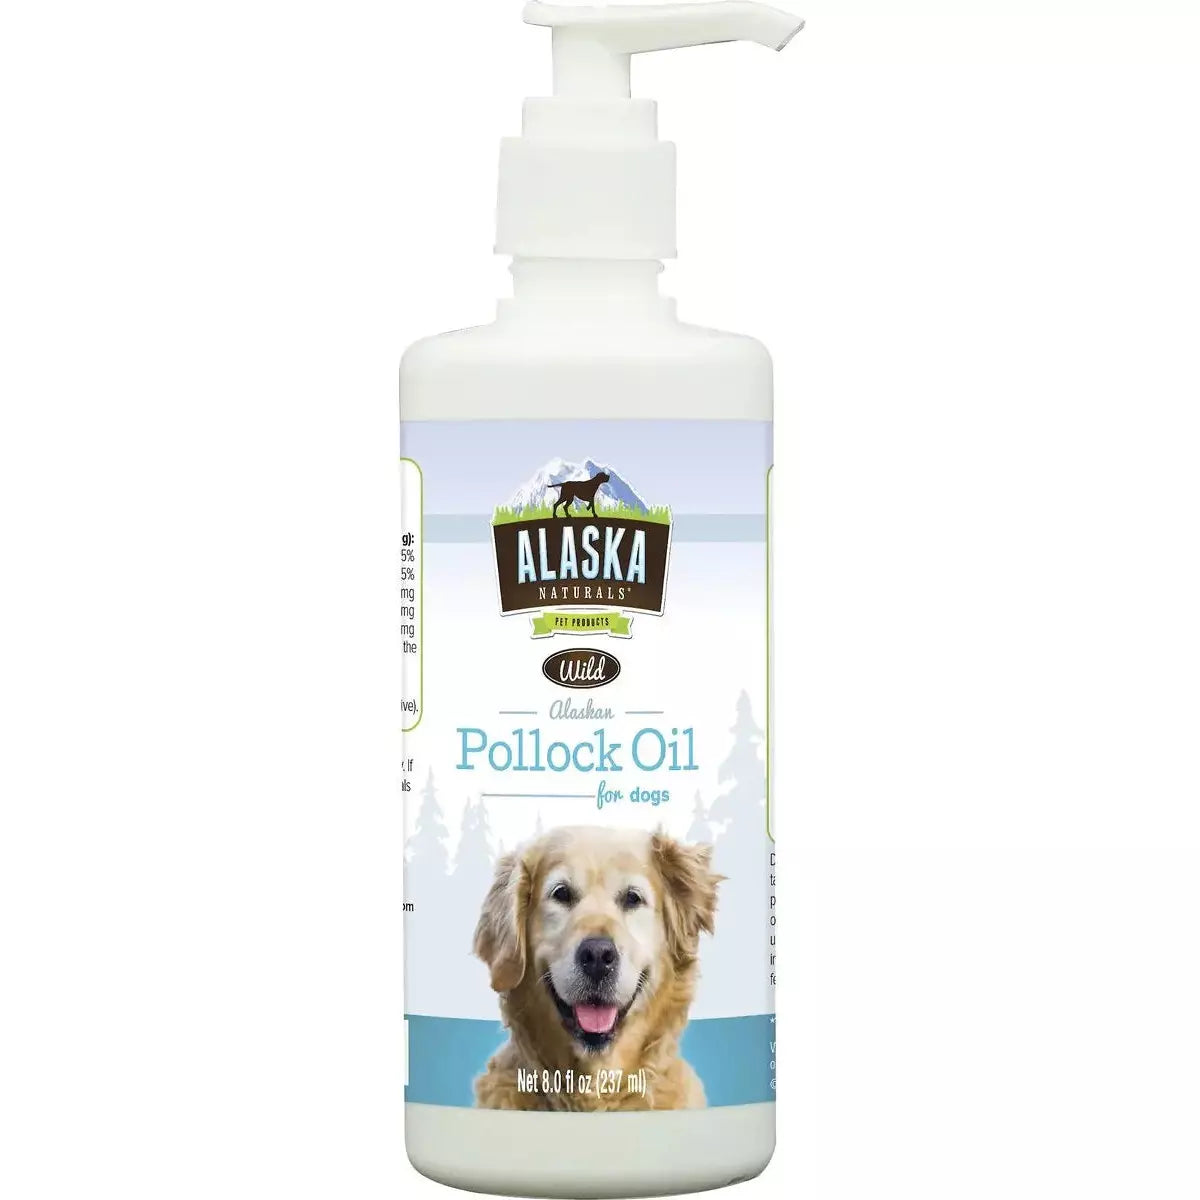 Alaska Naturals Wild Alaskan Pollock Oil Natural Dog Supplement Alaska Naturals